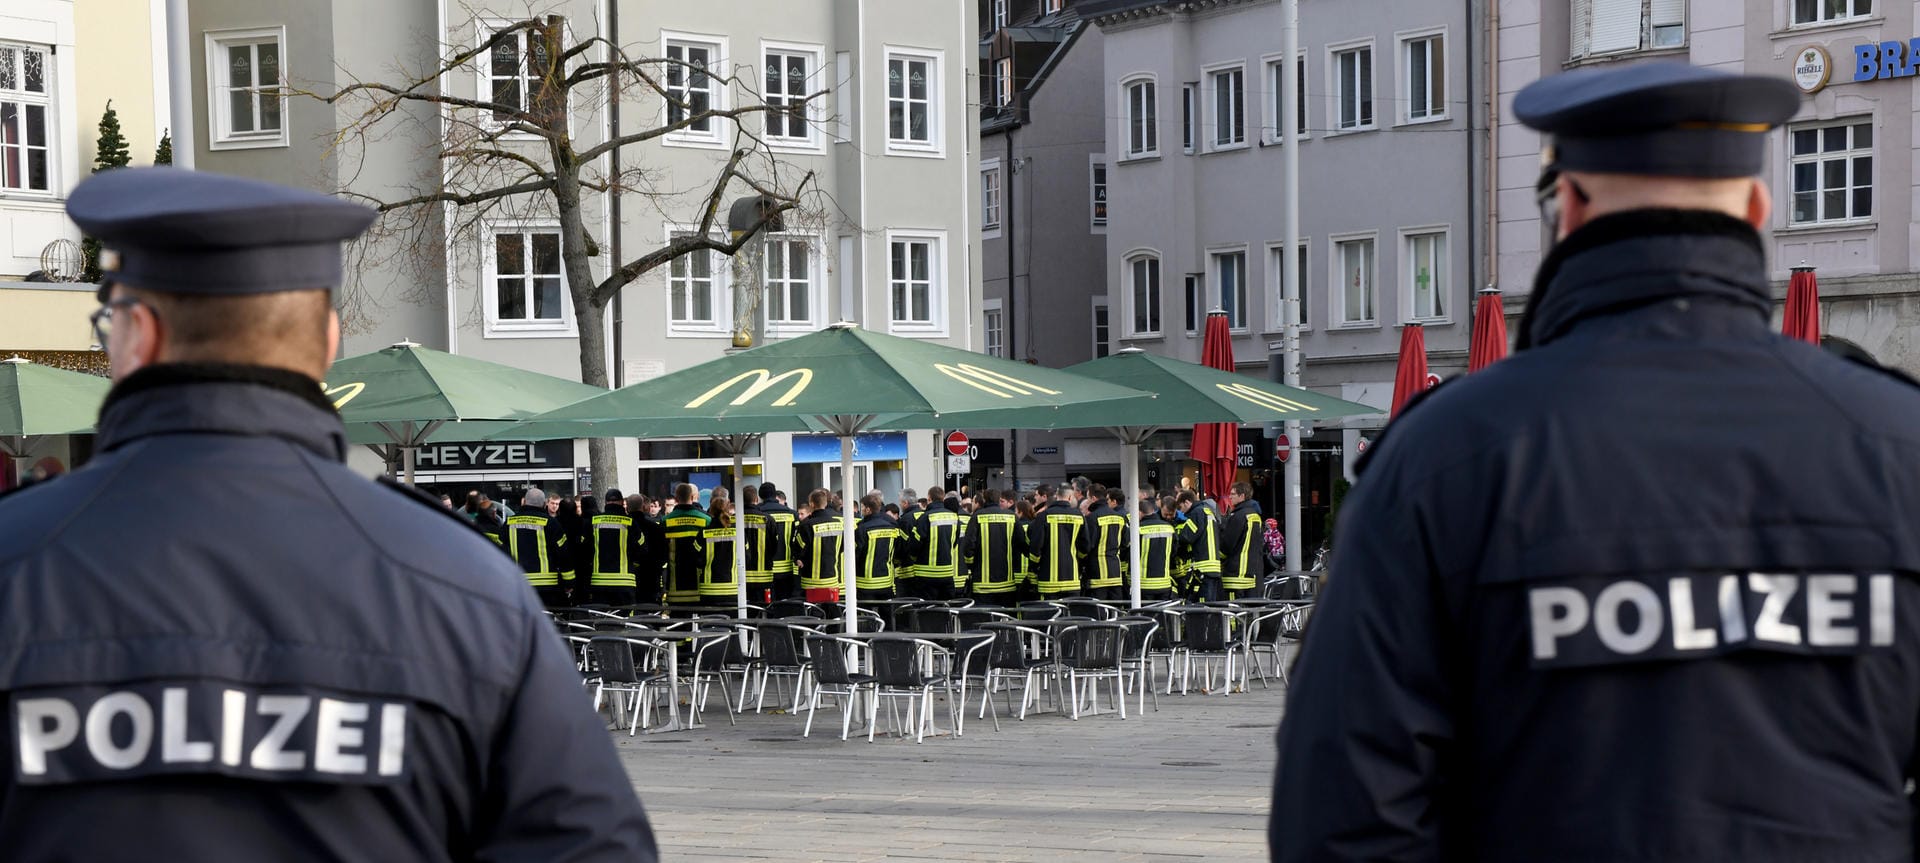 Zwei Polizisten stehen am Königsplatz bei einer Trauerveranstaltung der Feuerwehr: Eine Gruppe junger Männer kam den Freunden entgegen, sie gerieten miteinander in Streit – dabei wurde der 49-jährige Feuerwehrmann erschlagen.